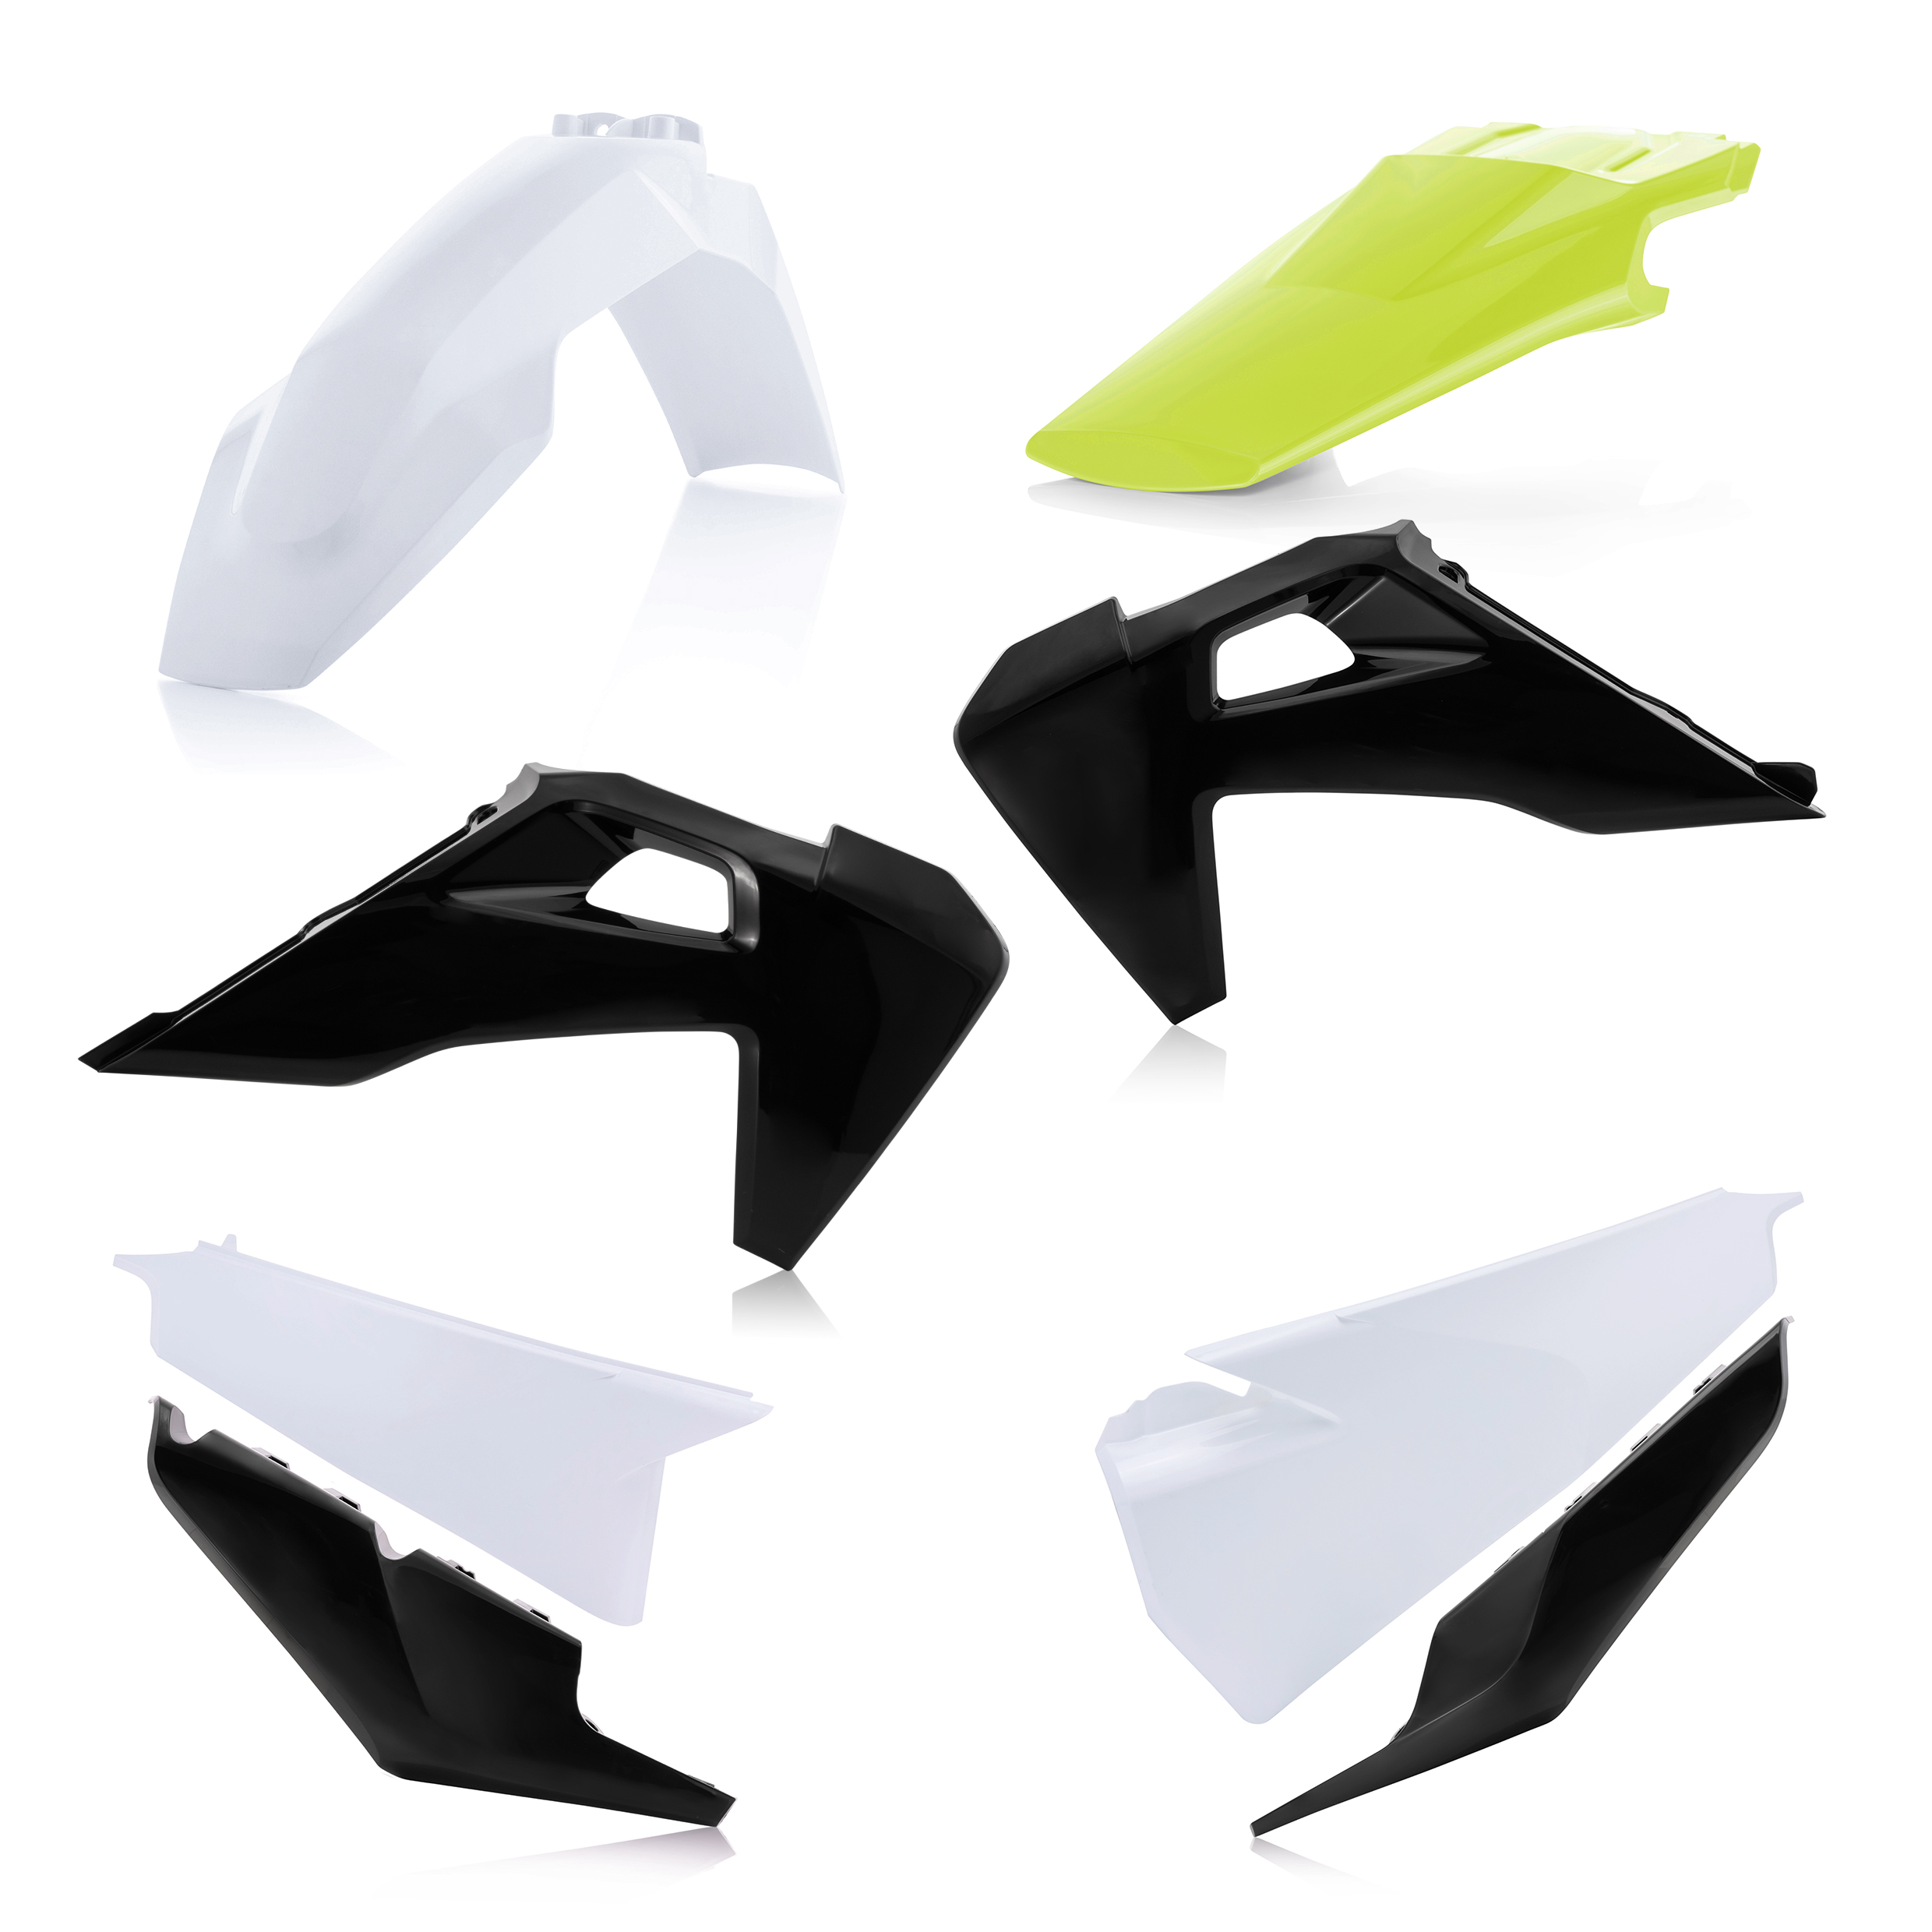 Plastikteile für deine Husqvarna FC / TC 125-450 in weiß-schwarz bestehend aus Kotflügel vorn Kotflügel hinten Kühlerspoiler Seitenteile